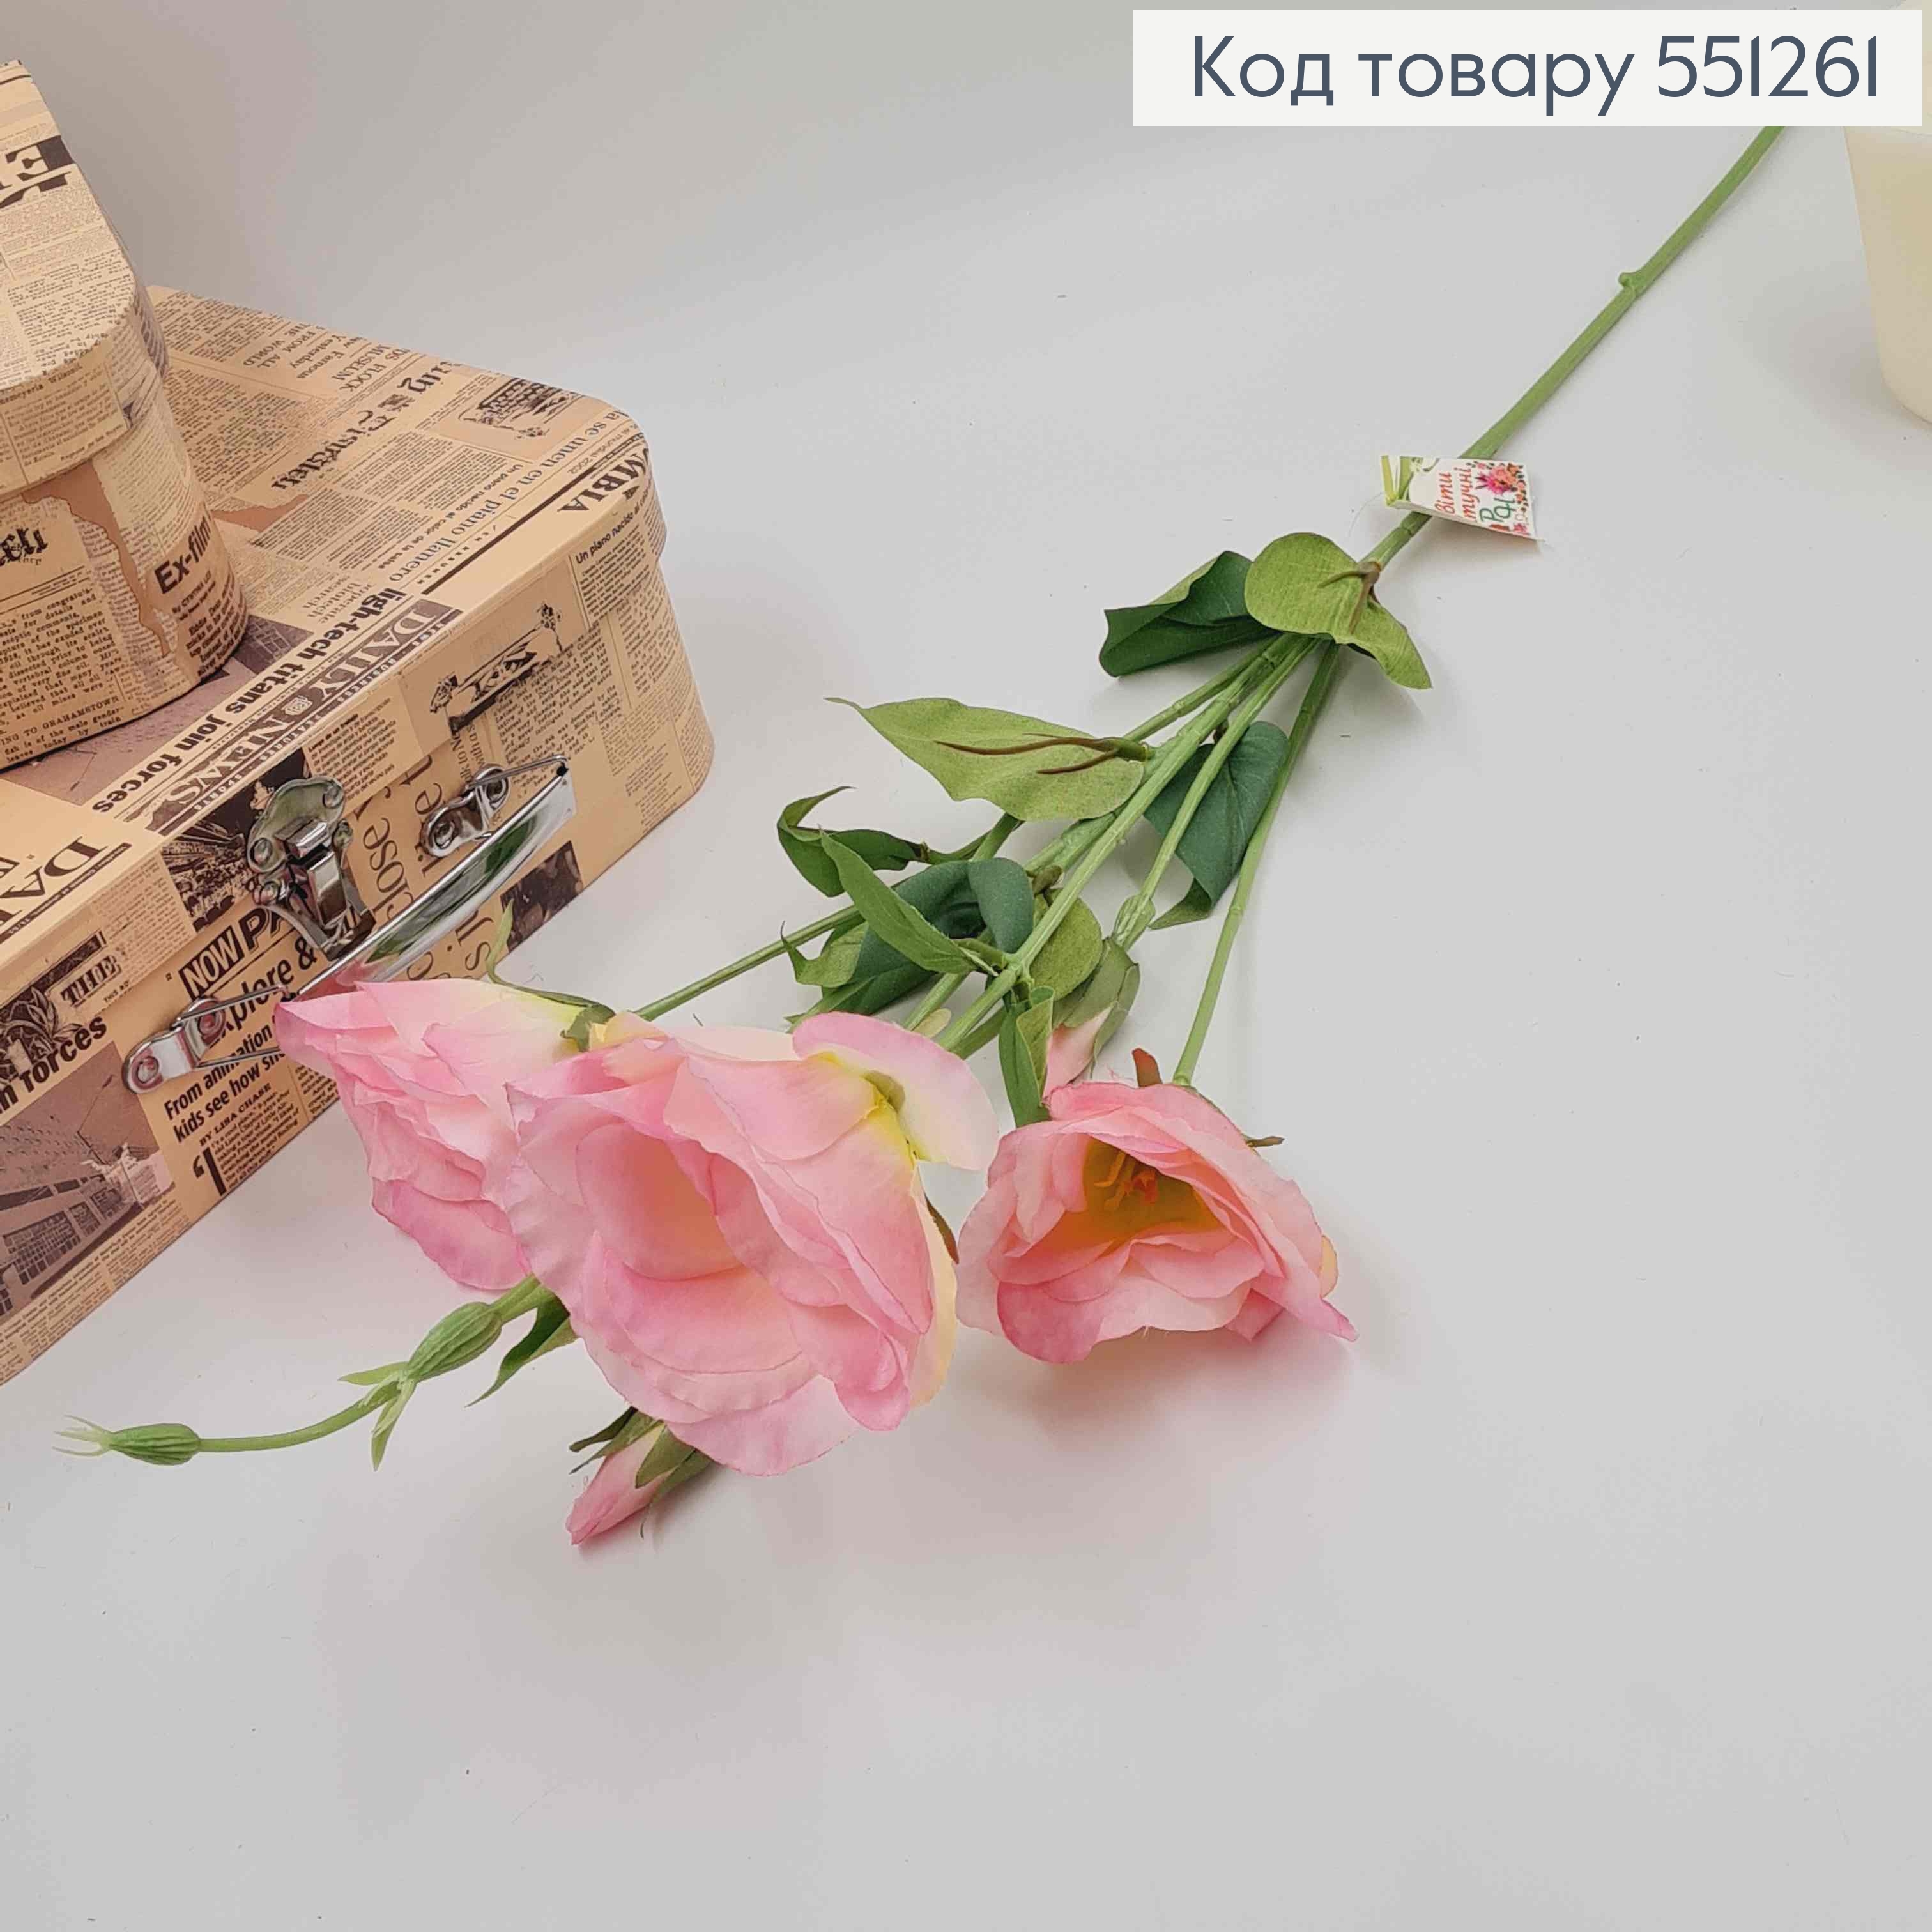 Искусственная ветвь эустомы розовая с белым на 3 цветочка и 3 бутона, высотой 70см. 551261 фото 2